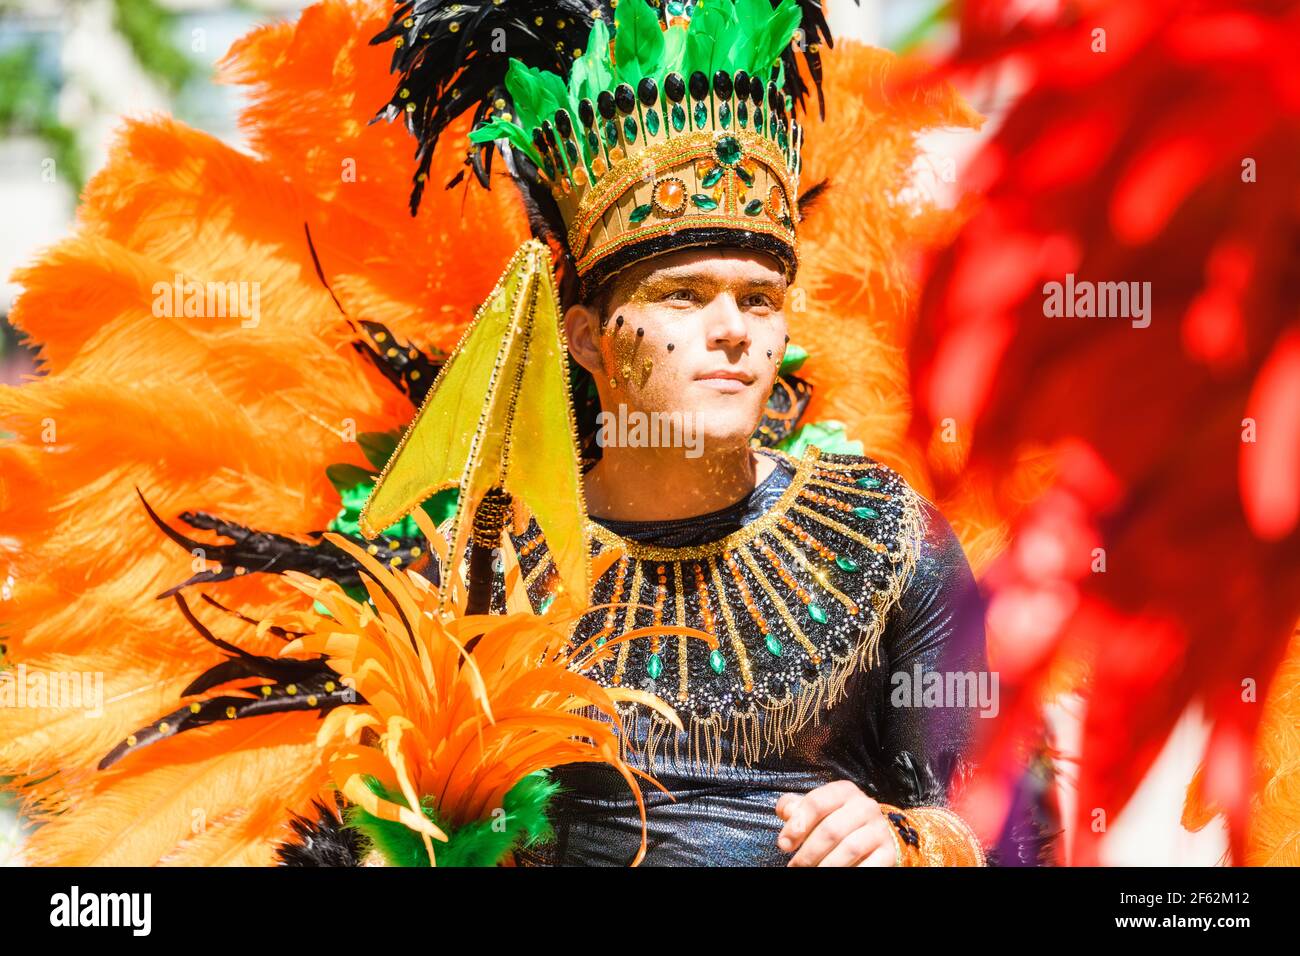 HAMMARKULLEN, SCHWEDEN - 25. MAI 2019: Gesicht eines jungen Mannes beim jährlichen Karneval in Hammarkullen, Schweden Stockfoto